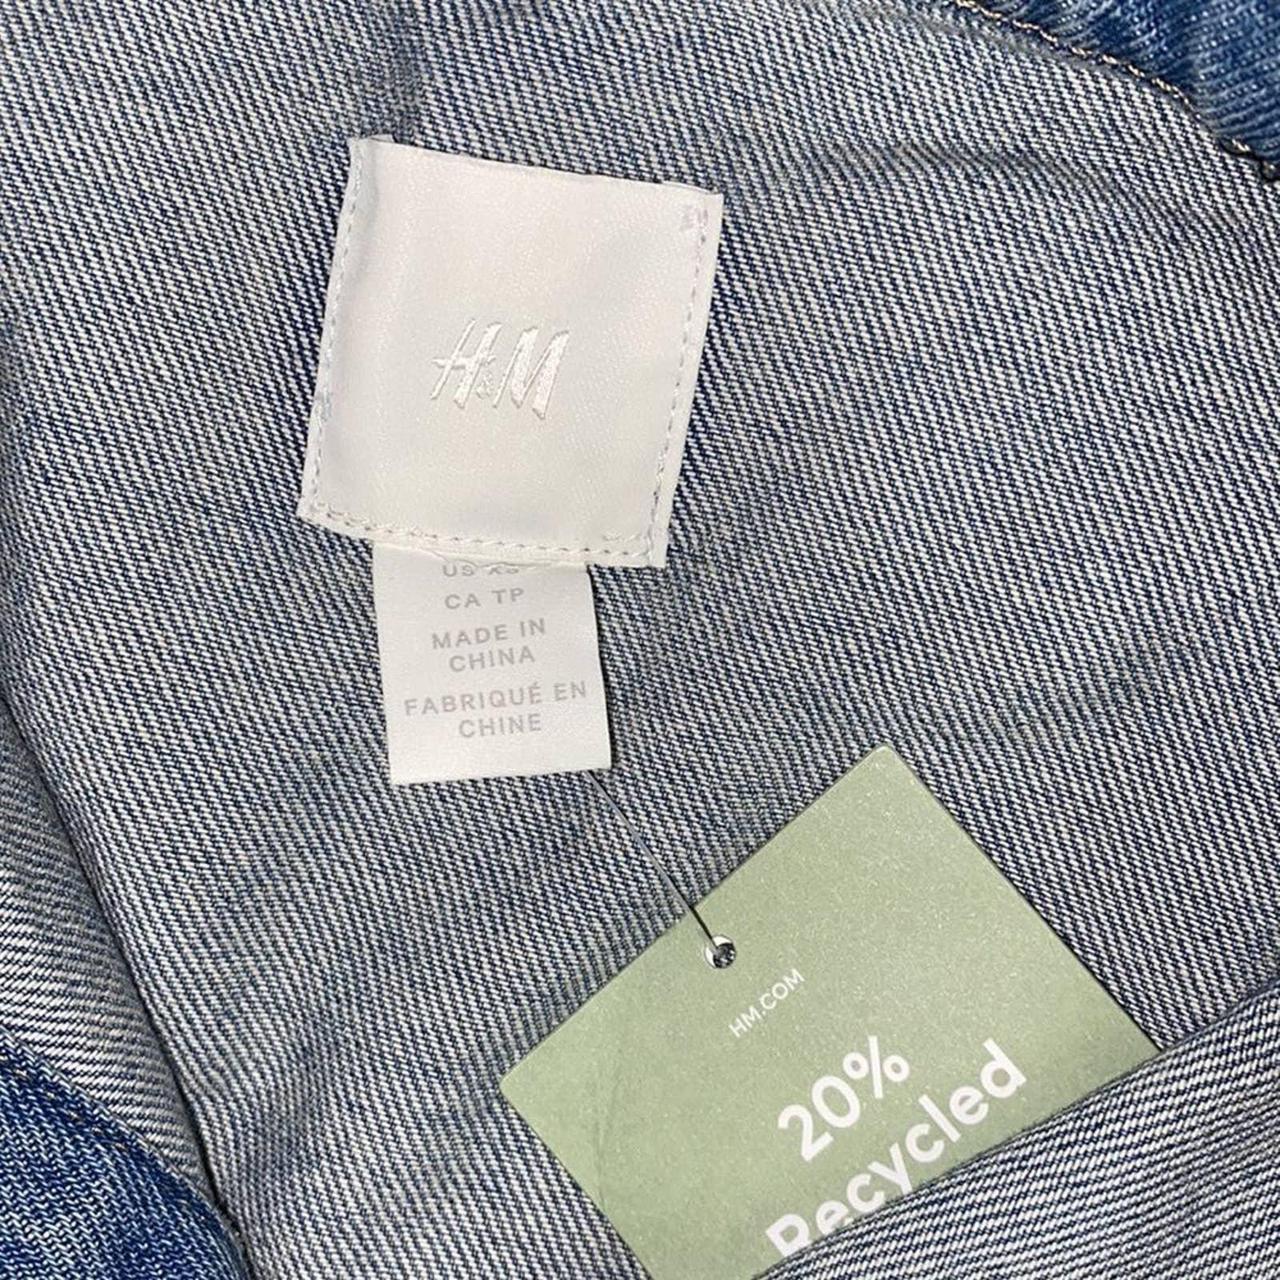 Product Image 4 - H&M Sleeveless Shirt Jacket.Washed cotton